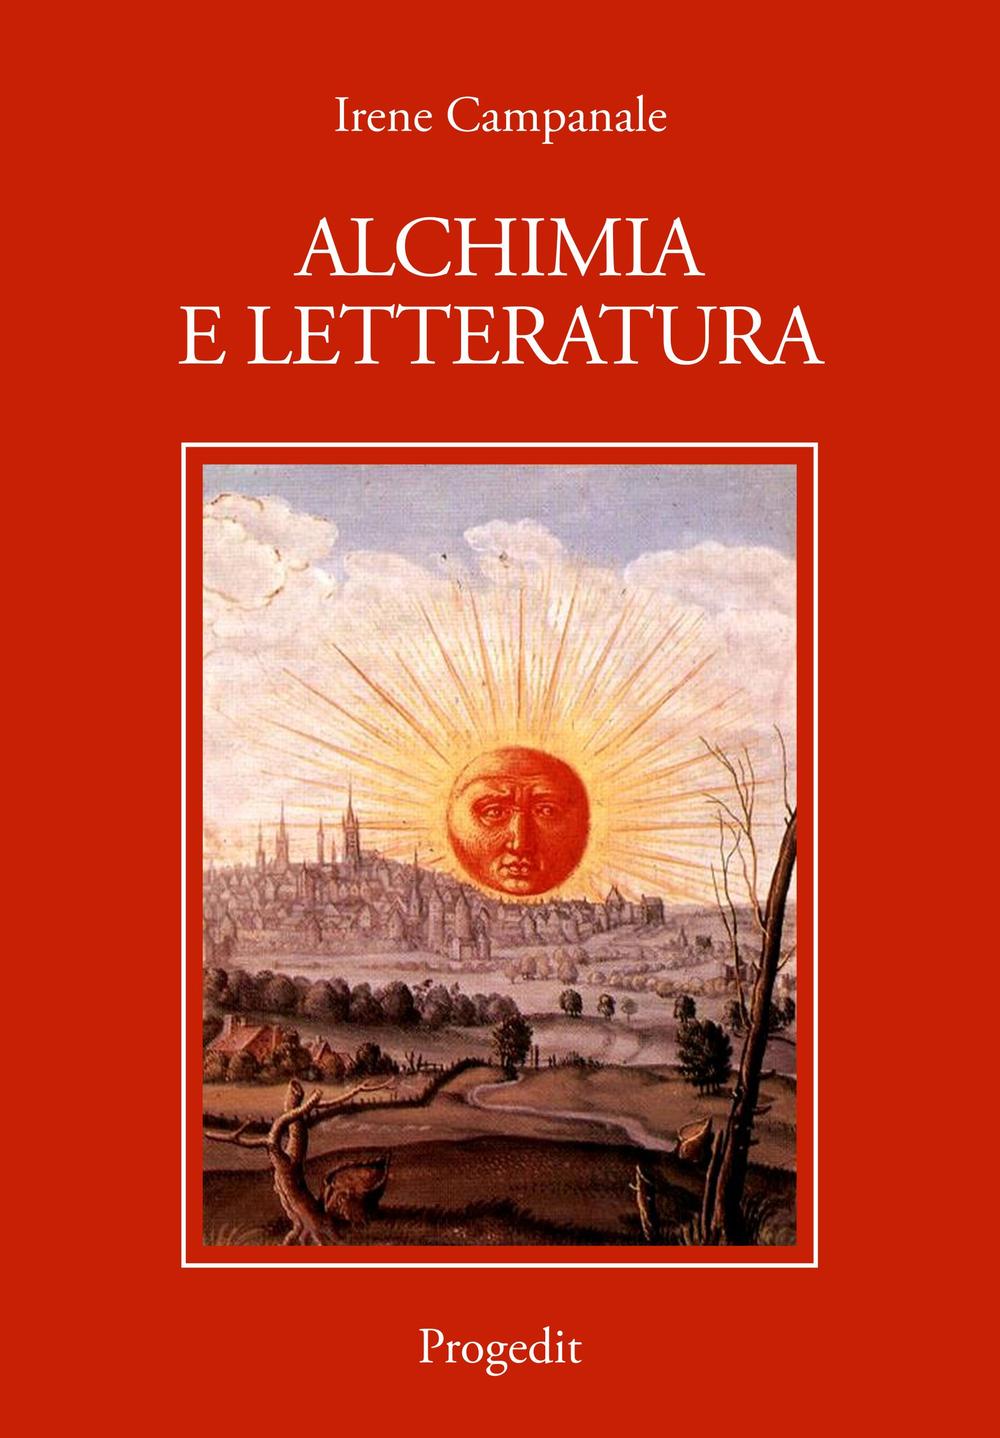 Libri Irene Campanale - Alchimia E Letteratura NUOVO SIGILLATO, EDIZIONE DEL 01/01/2016 SUBITO DISPONIBILE